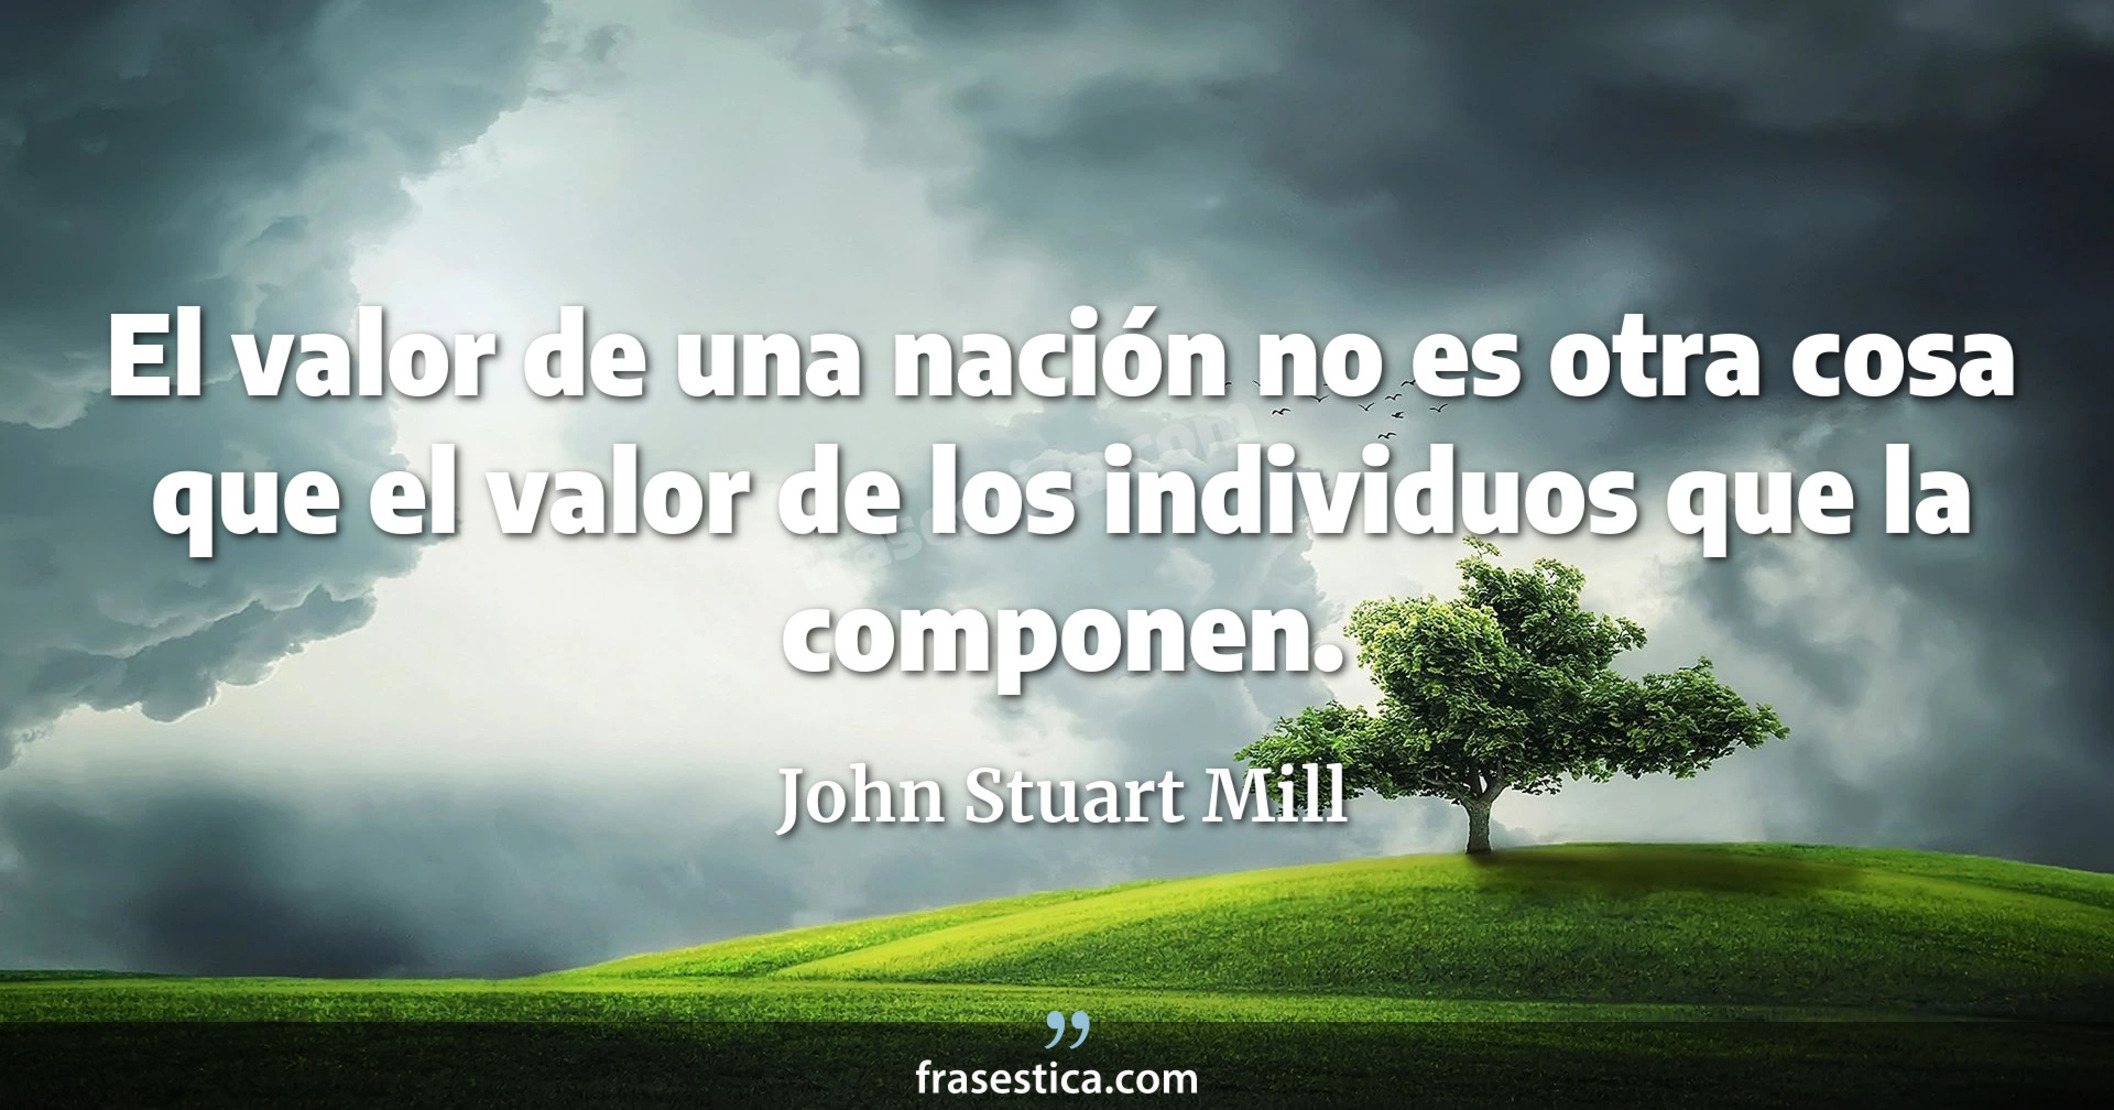 El valor de una nación no es otra cosa que el valor de los individuos que la componen. - John Stuart Mill